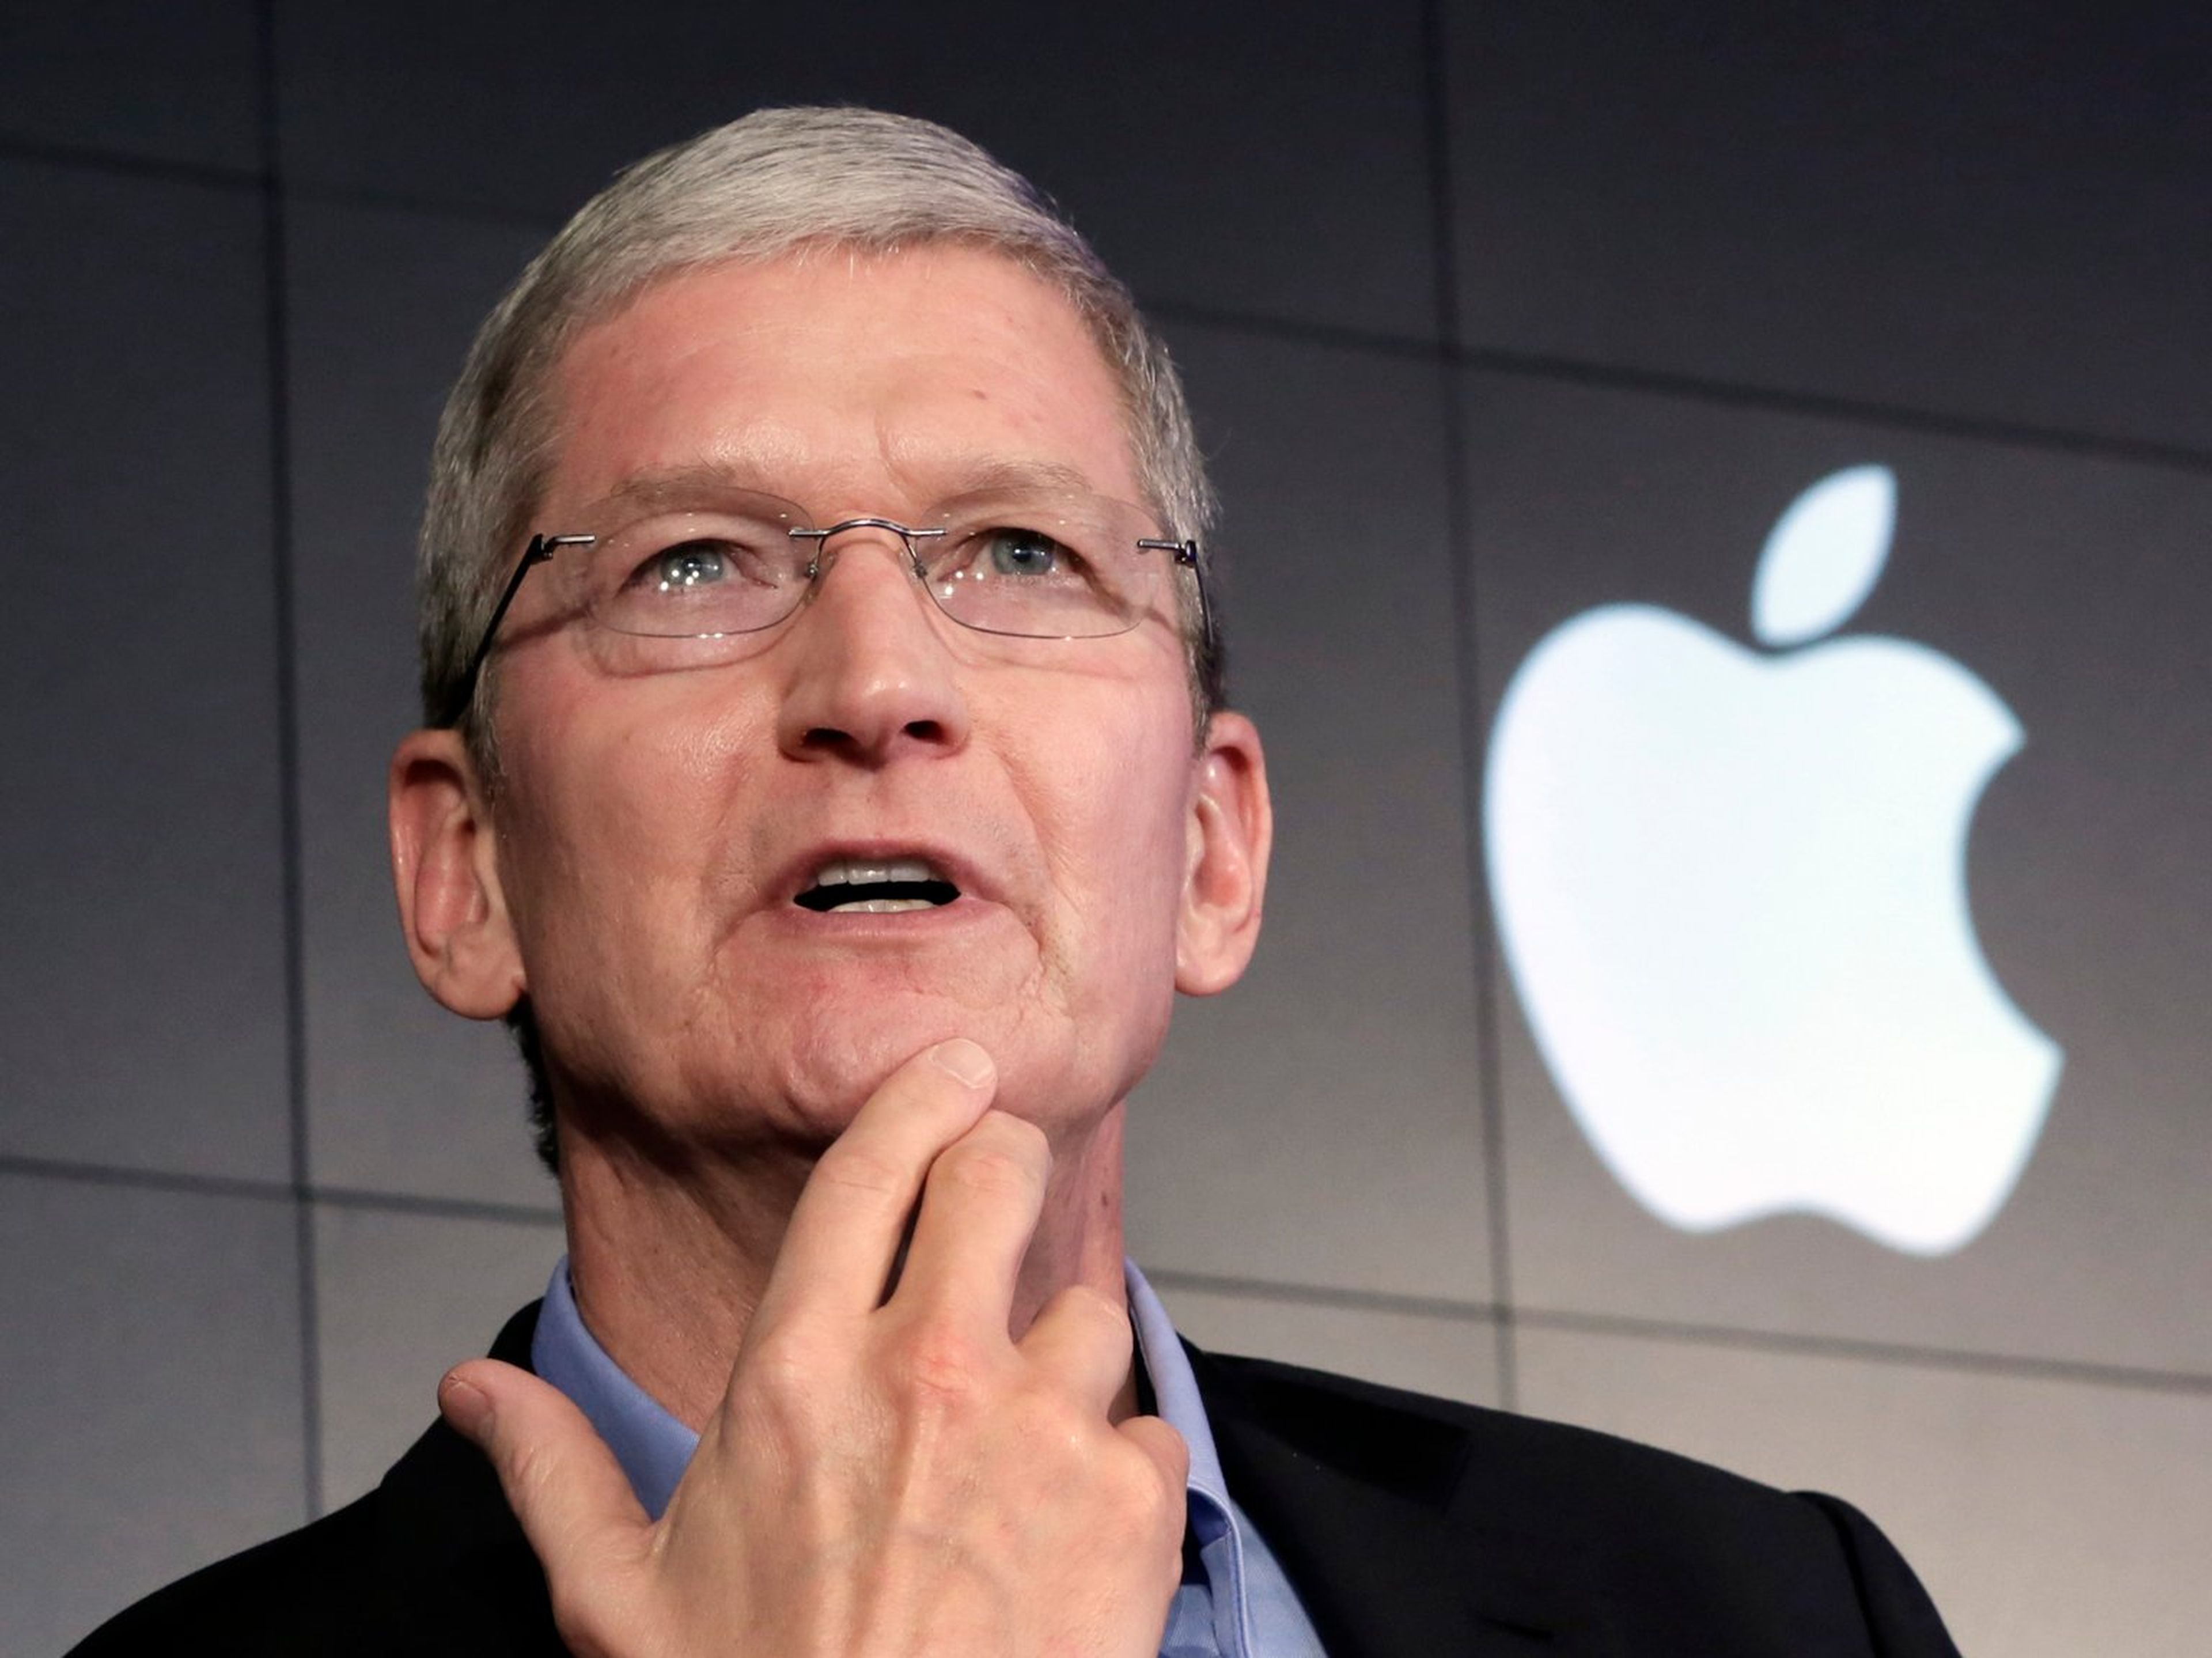 El CEO Tim Cook ha dicho que está centrado en averiguar cómo puede Apple mejorar la salud de las personas.